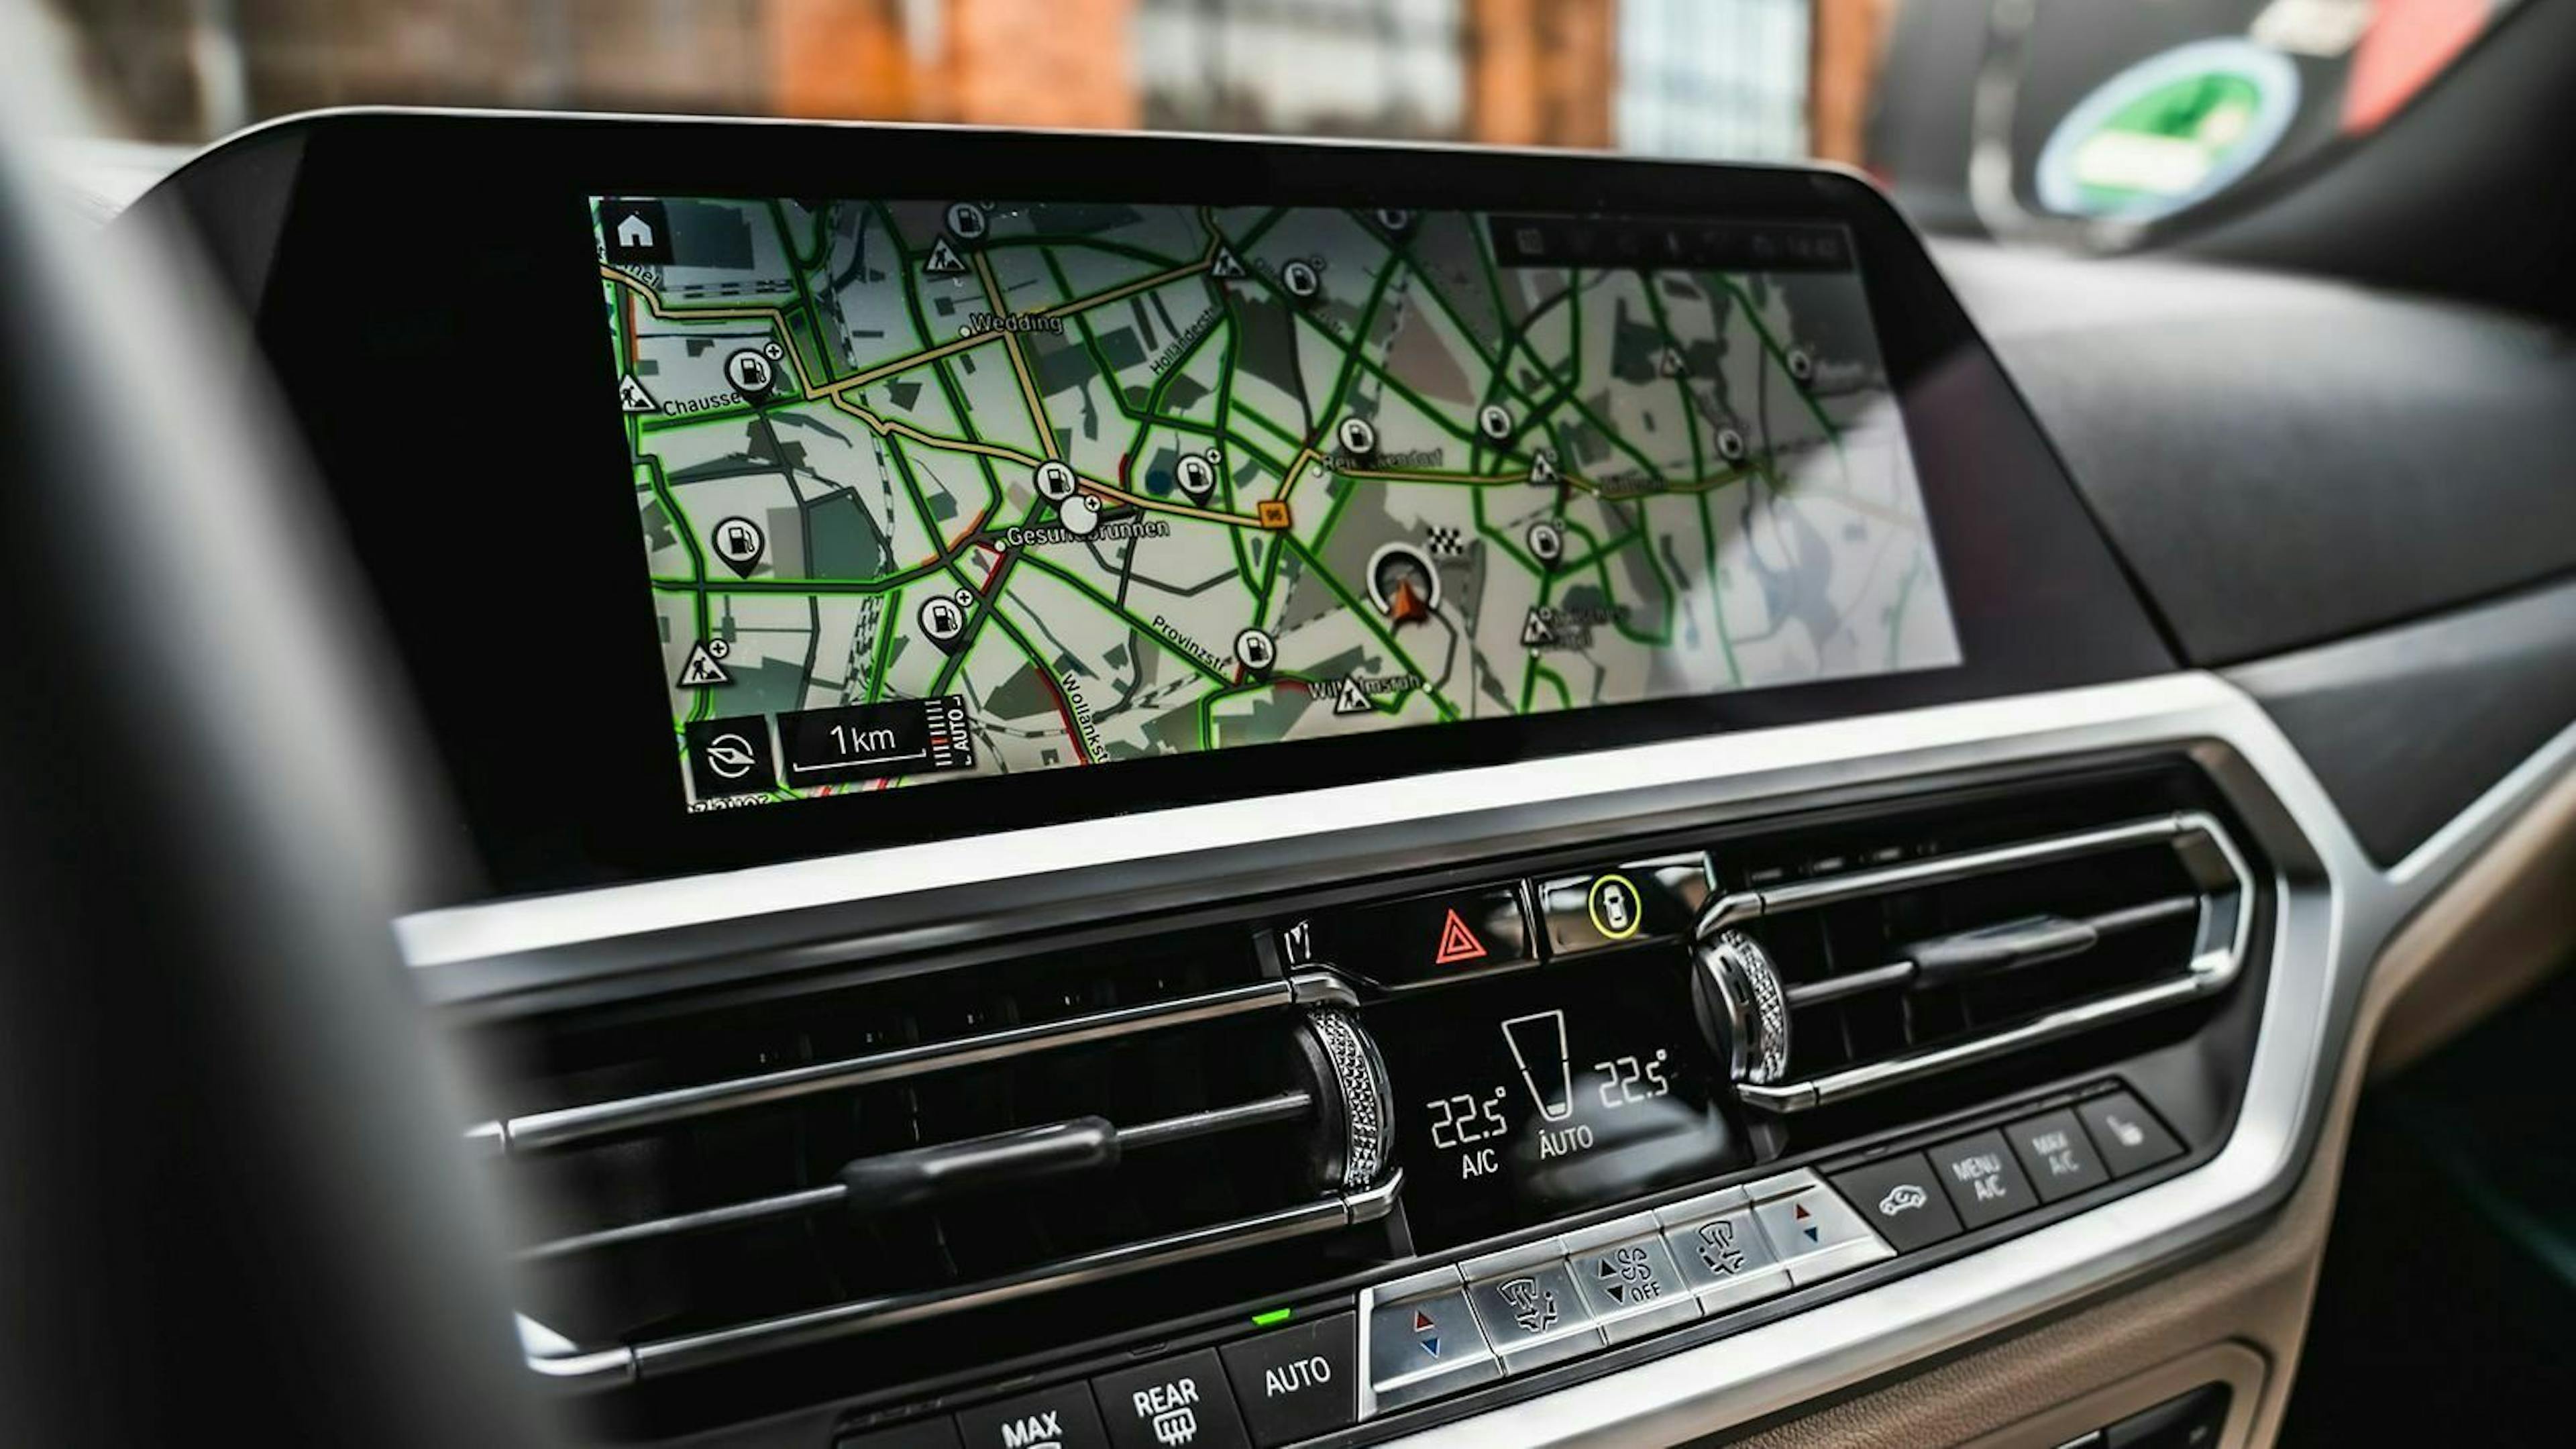 Zu sehen ist der Infotainment-Bildschirm des BMW 320d Touring